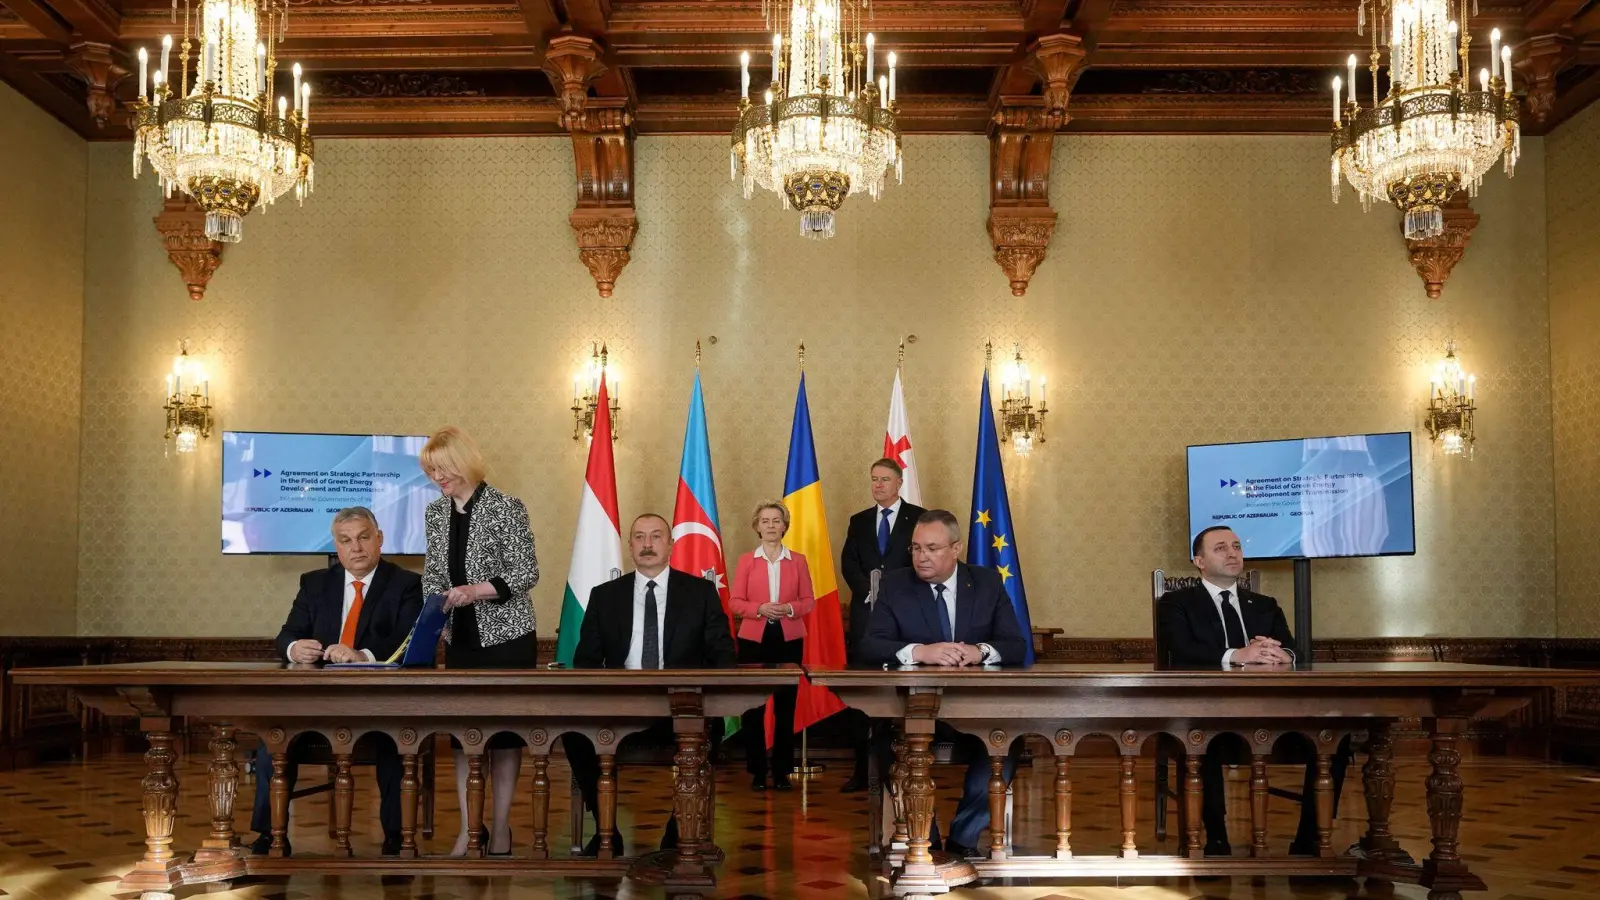 Viktor Orban, Ilham Aliyev, Nicolae Cicuae und Irakli Garbishvilli (v.l.n.r.). Hinten in der Mitte Ursula von der Leyen. (Foto: Vadim Ghirda/AP/dpa)